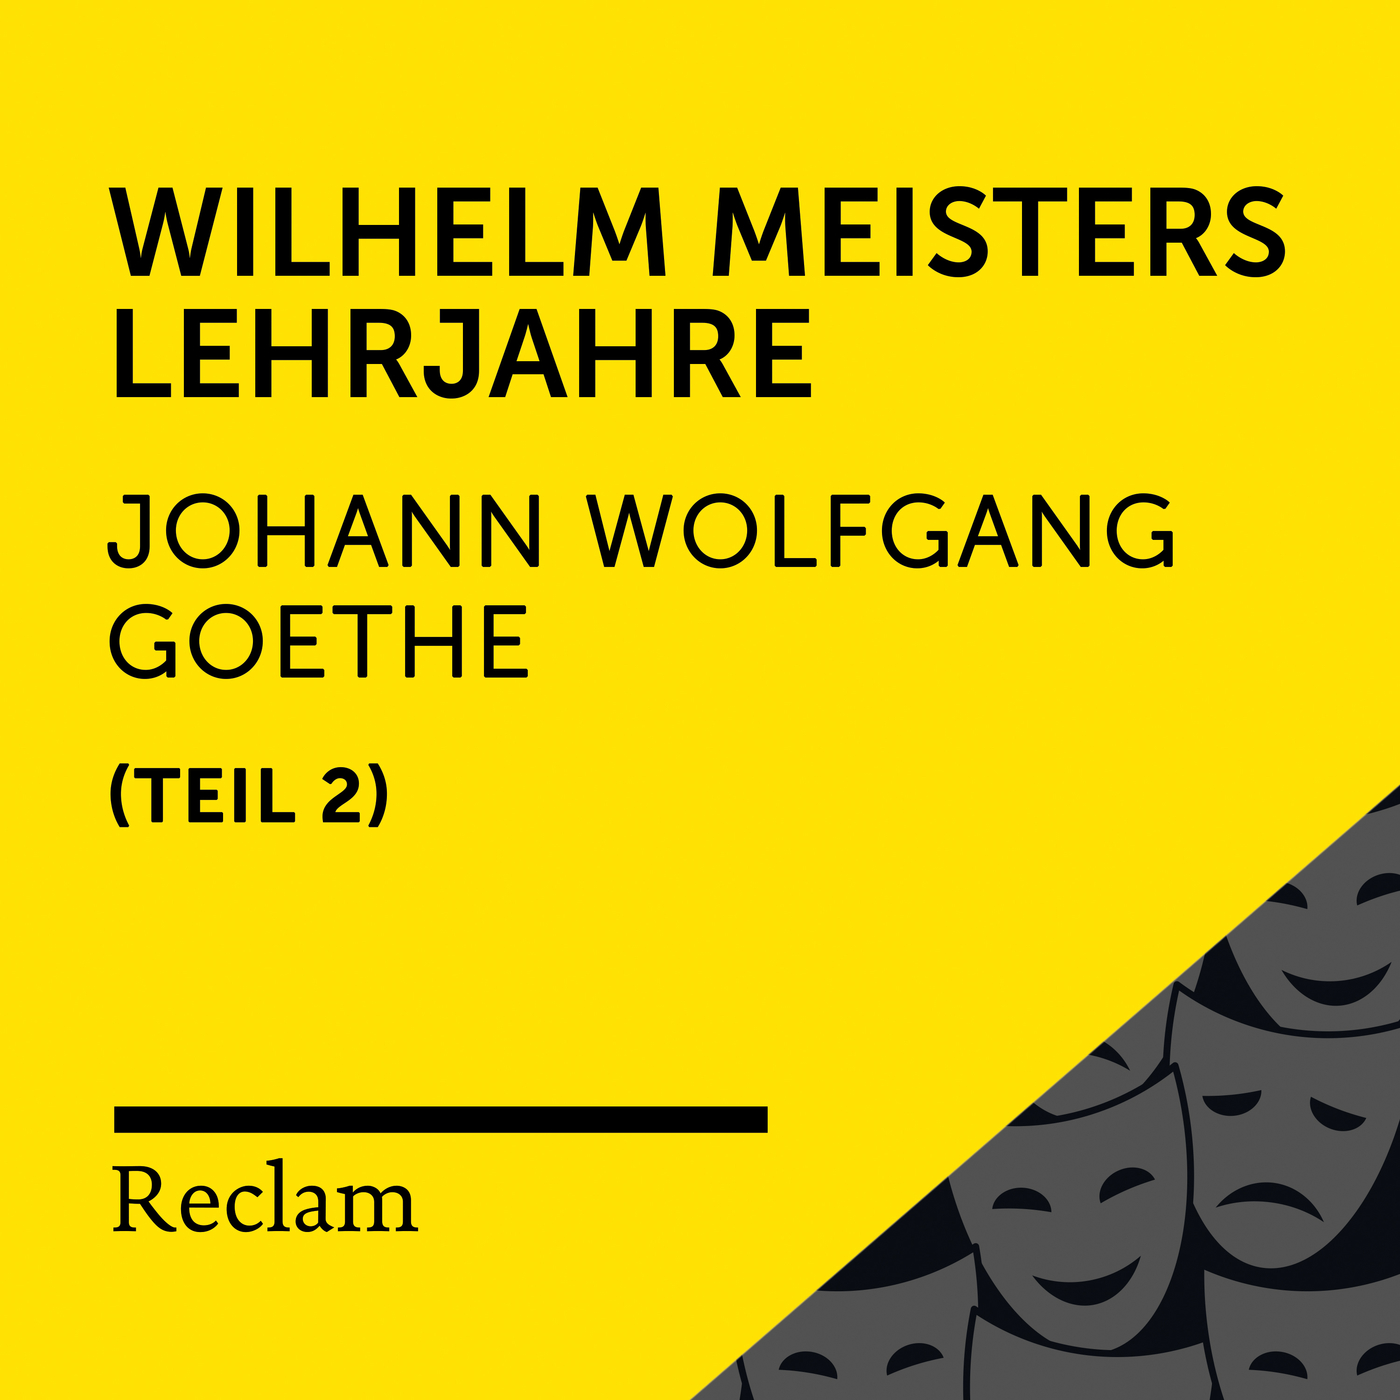 Wilhelm Meisters Lehrjahre, Buch 6 (Kapitel I, Teil 48)